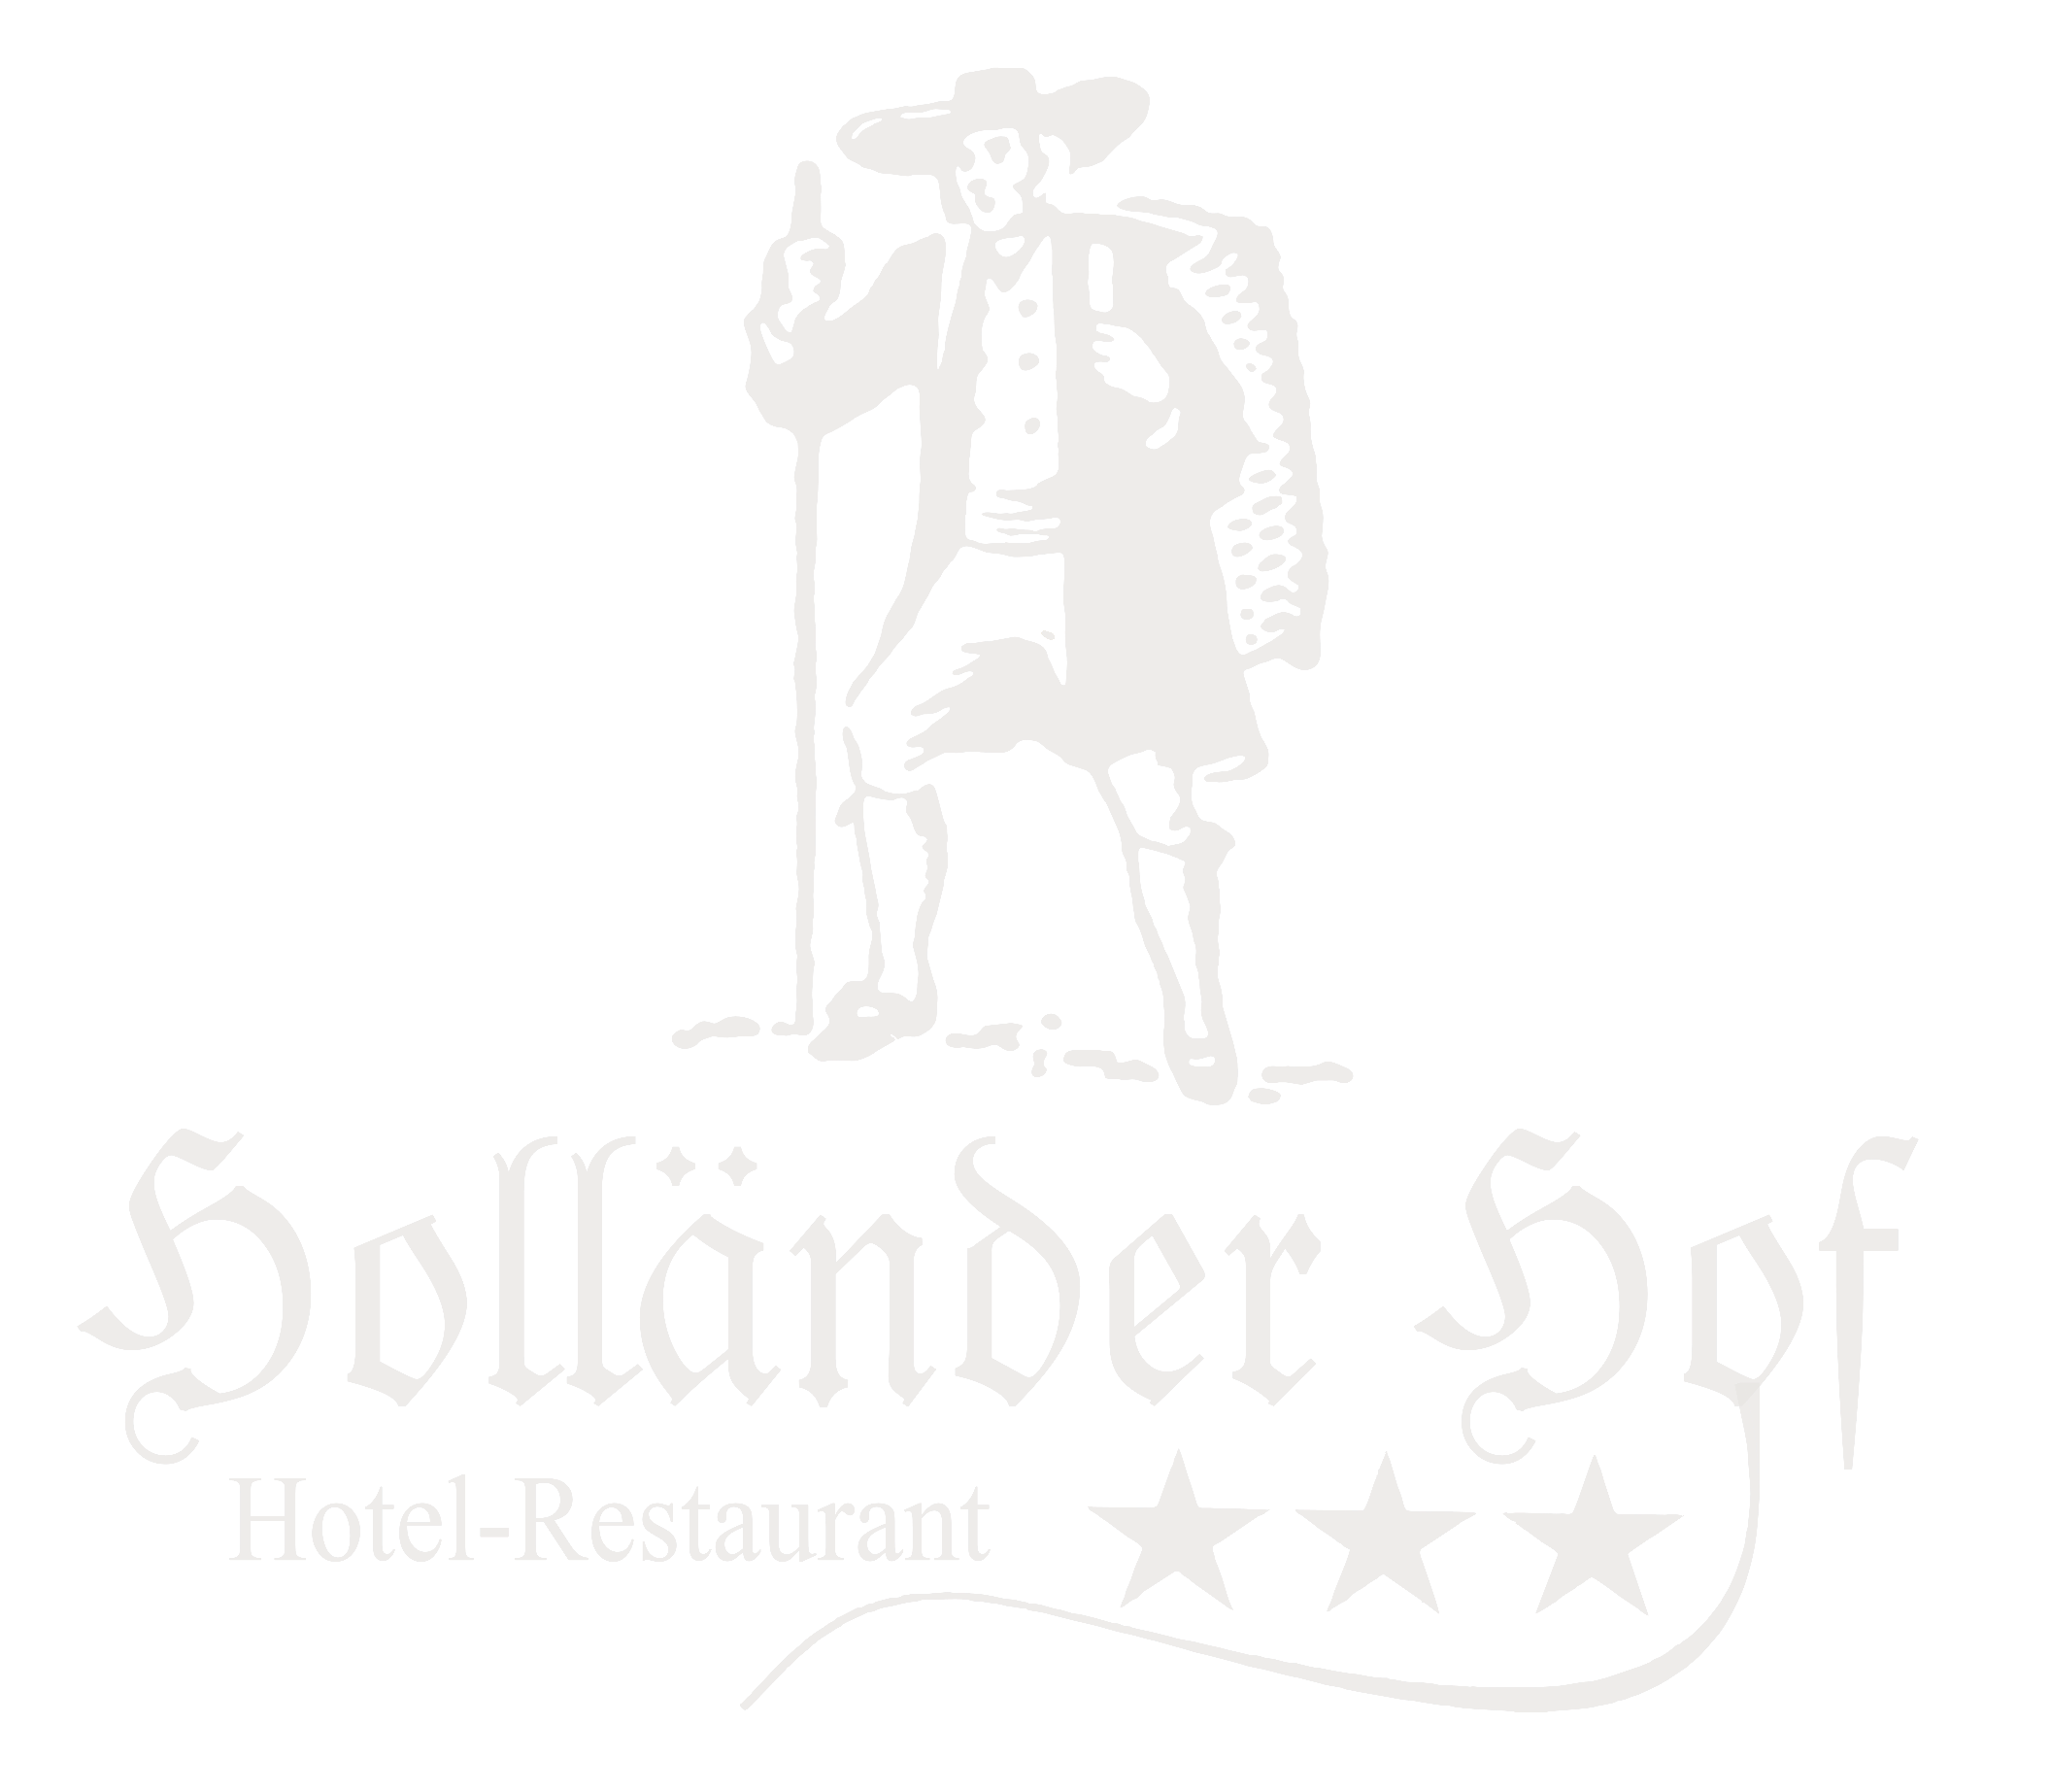 Logo Holländer Hof vektorisiert.cdr